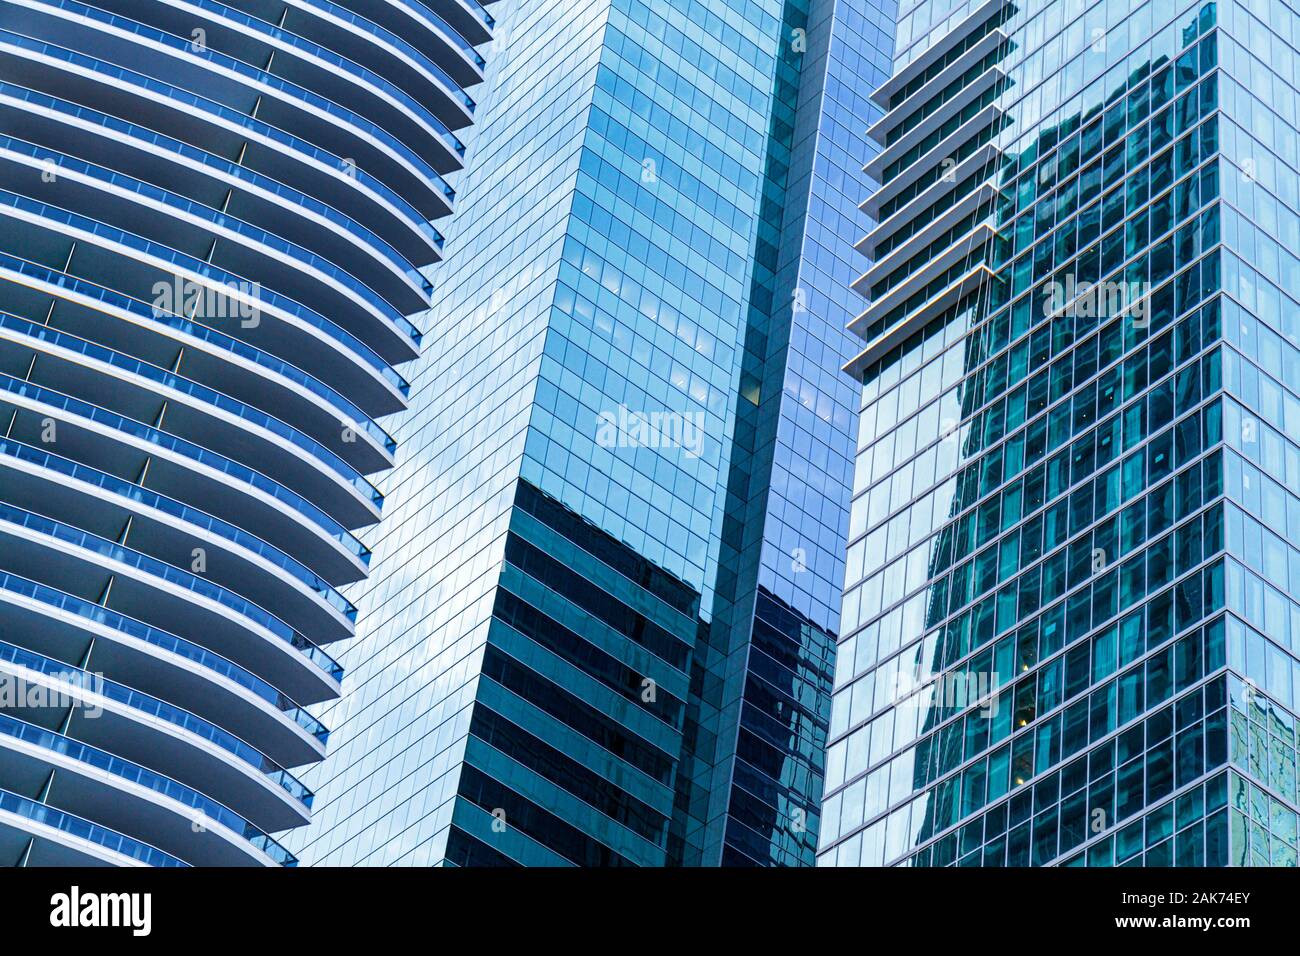 Miami Florida, Brickell District, grattacieli grattacieli edifici condominio appartamenti residenziali alloggio, balconi, off Foto Stock